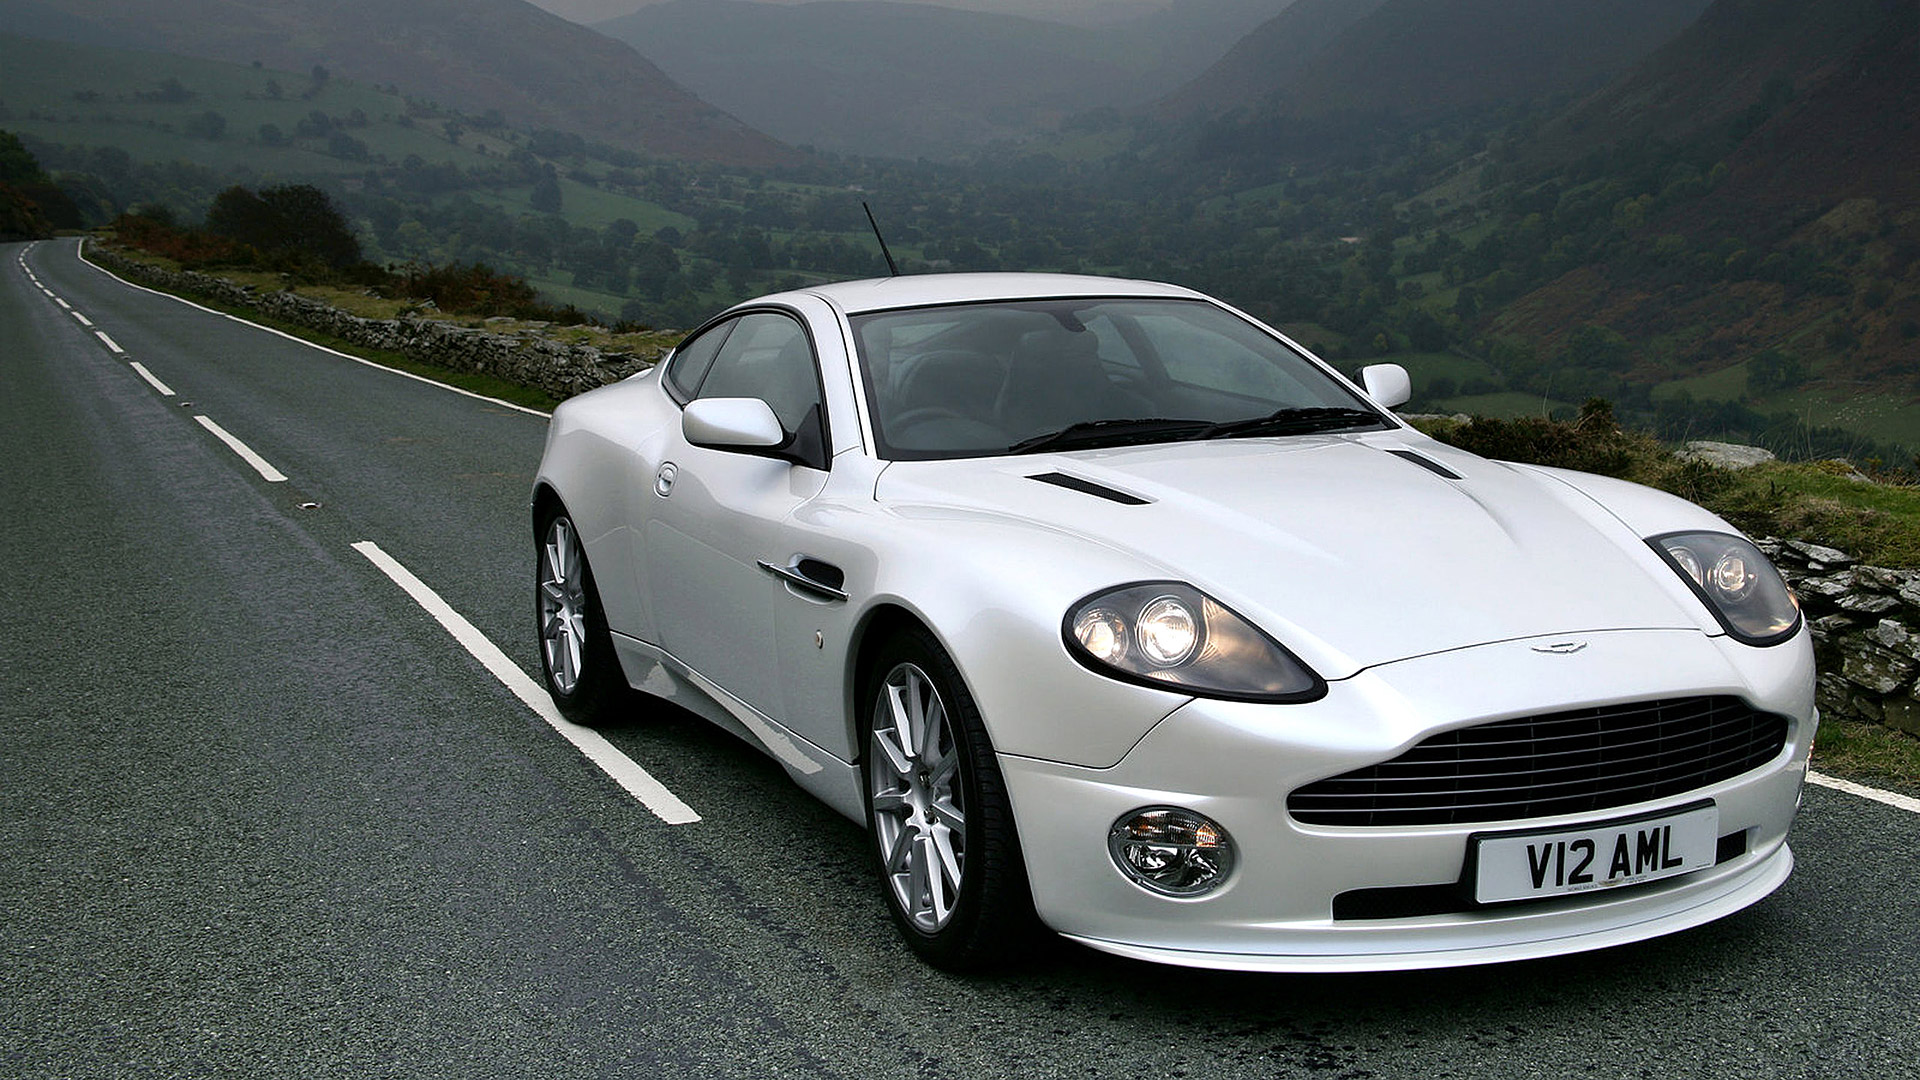 Descarga gratuita de fondo de pantalla para móvil de Aston Martin, Coche, Vehículos, Coche Blanco, Aston Martin Vanquish.